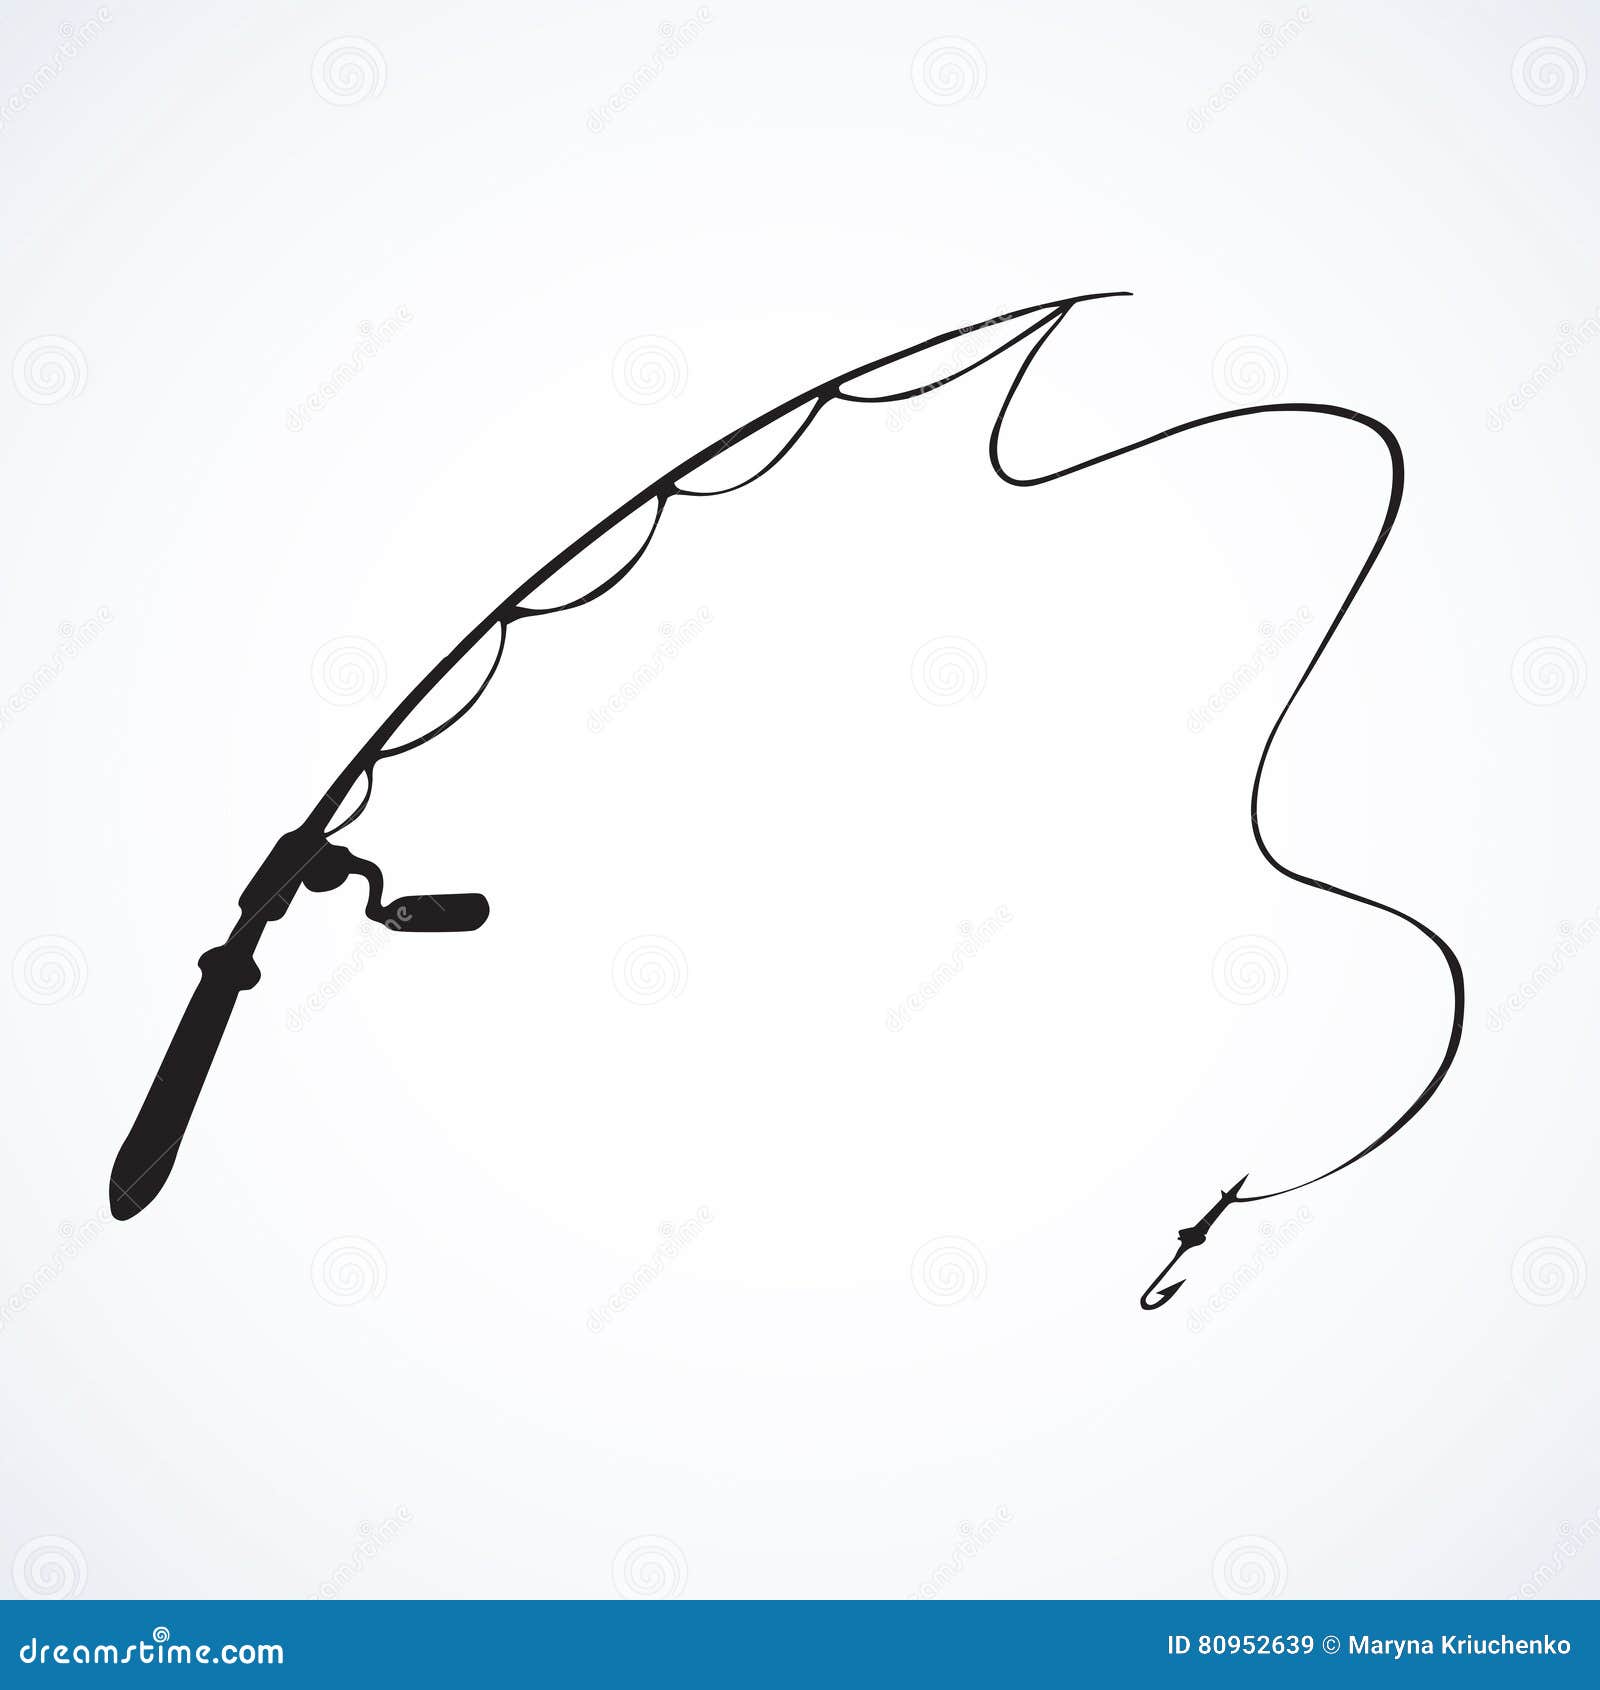 Fishing Rod Drawing Stock Illustrations – 4,475 Fishing Rod